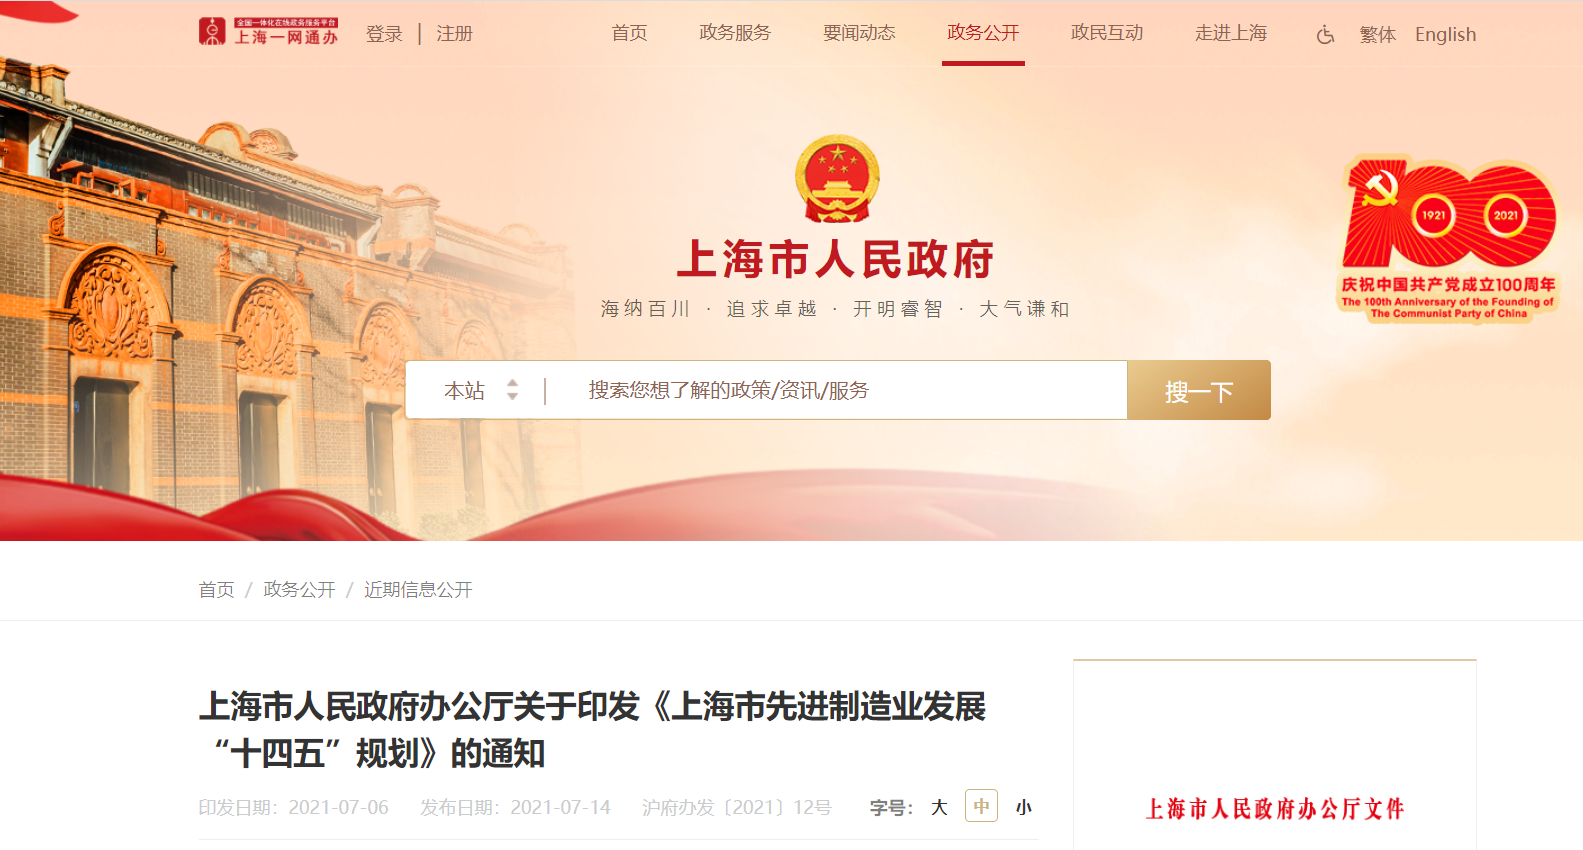 上海市人民政府办公厅关于印发《上海市先进制造业发展“十四五”规划》的通知